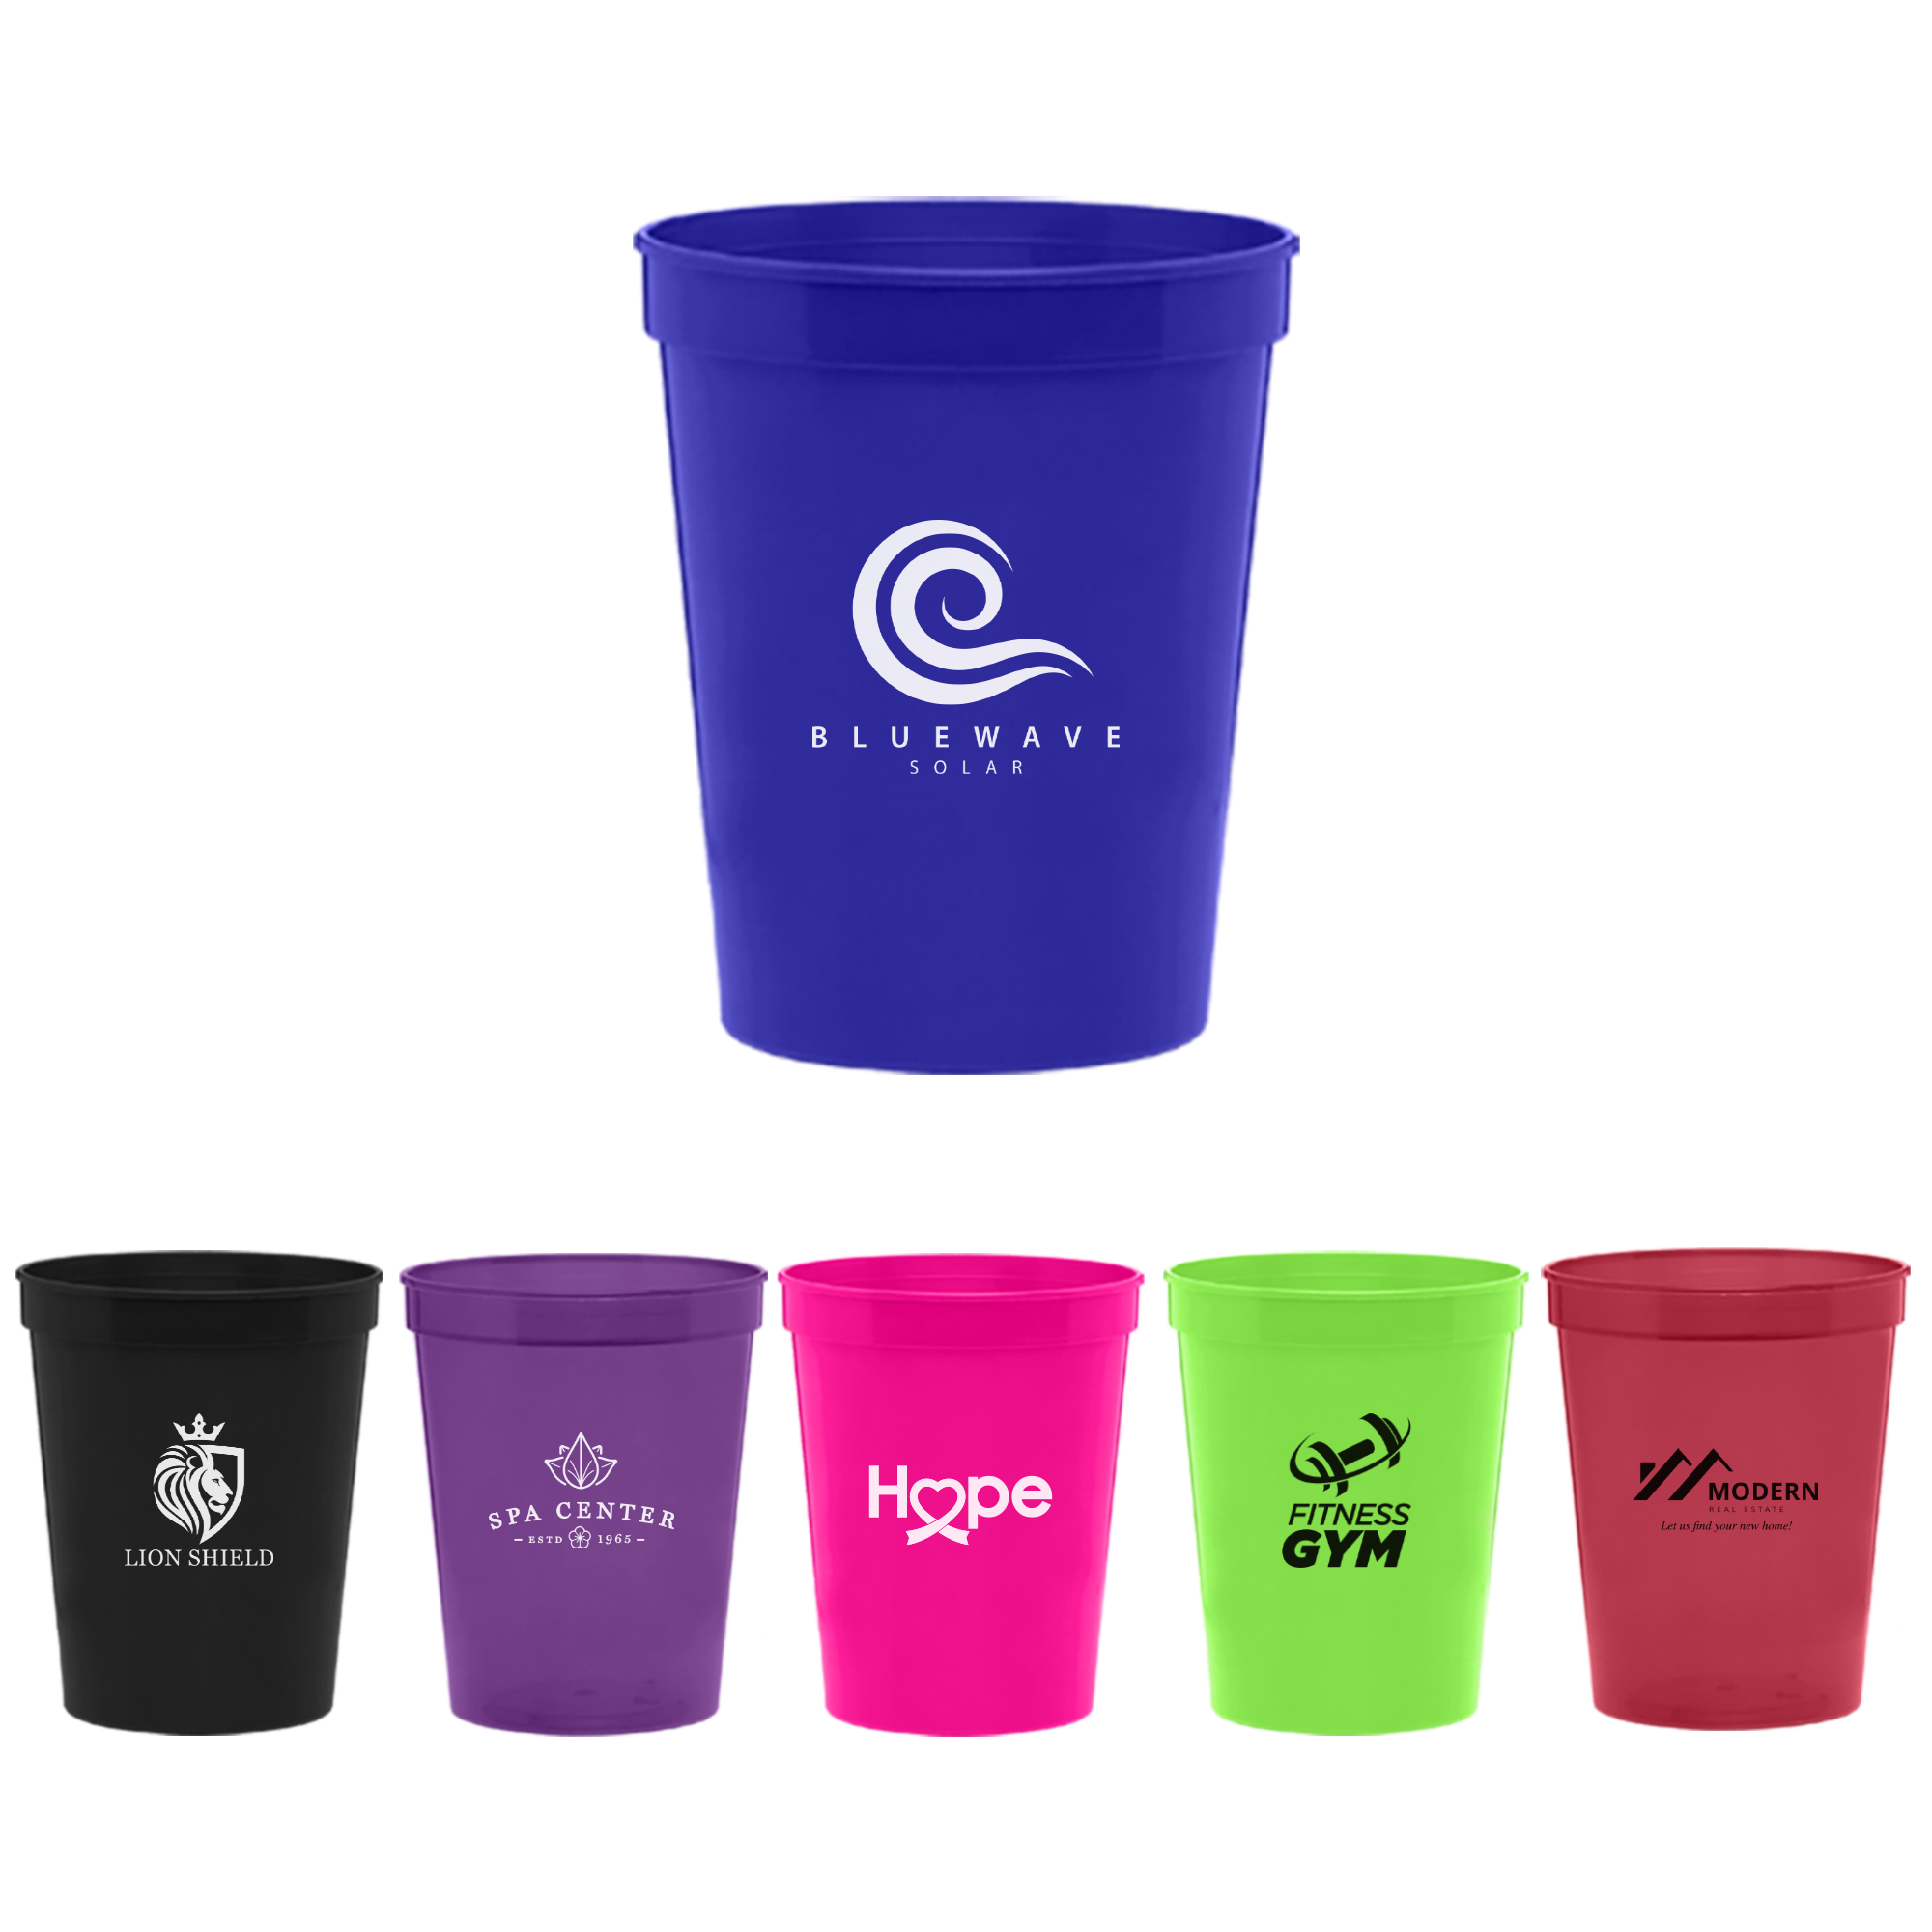 Design Custom Printed 22 oz. Plastic Stadium Cups Online at CustomInk